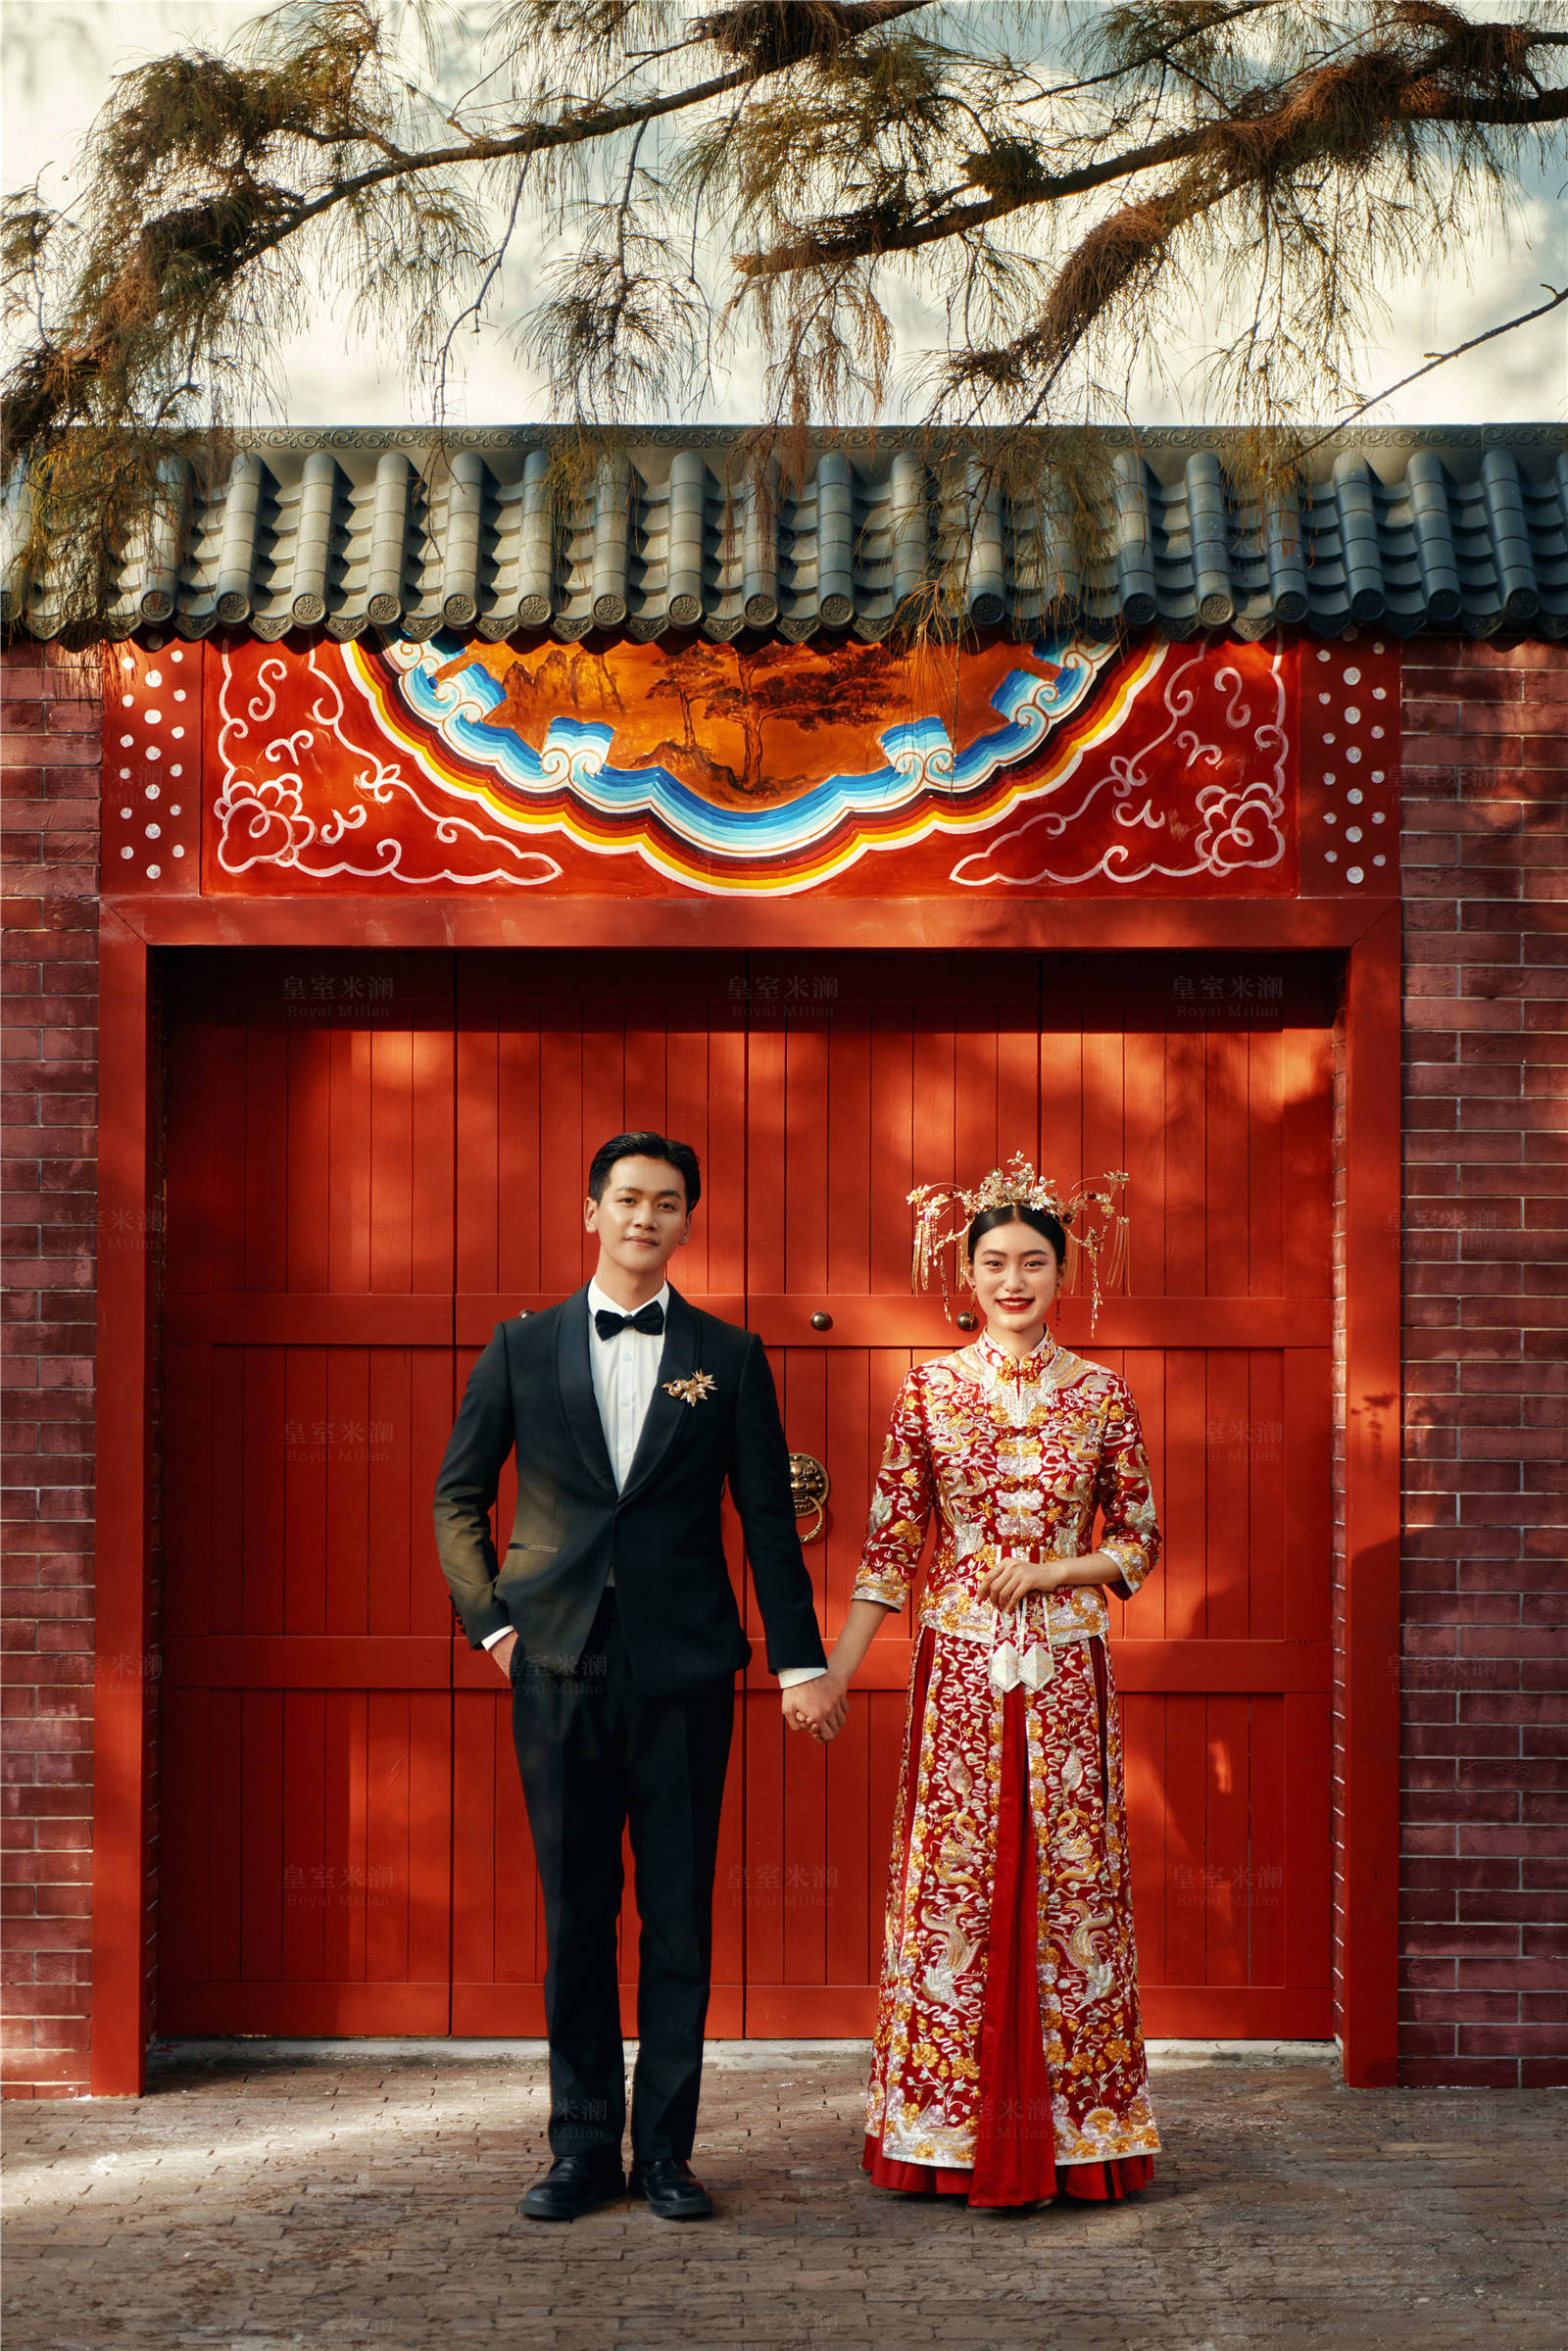 日光旅行_近期主题 | 作品展示 | 深圳皇室米兰婚纱摄影集团